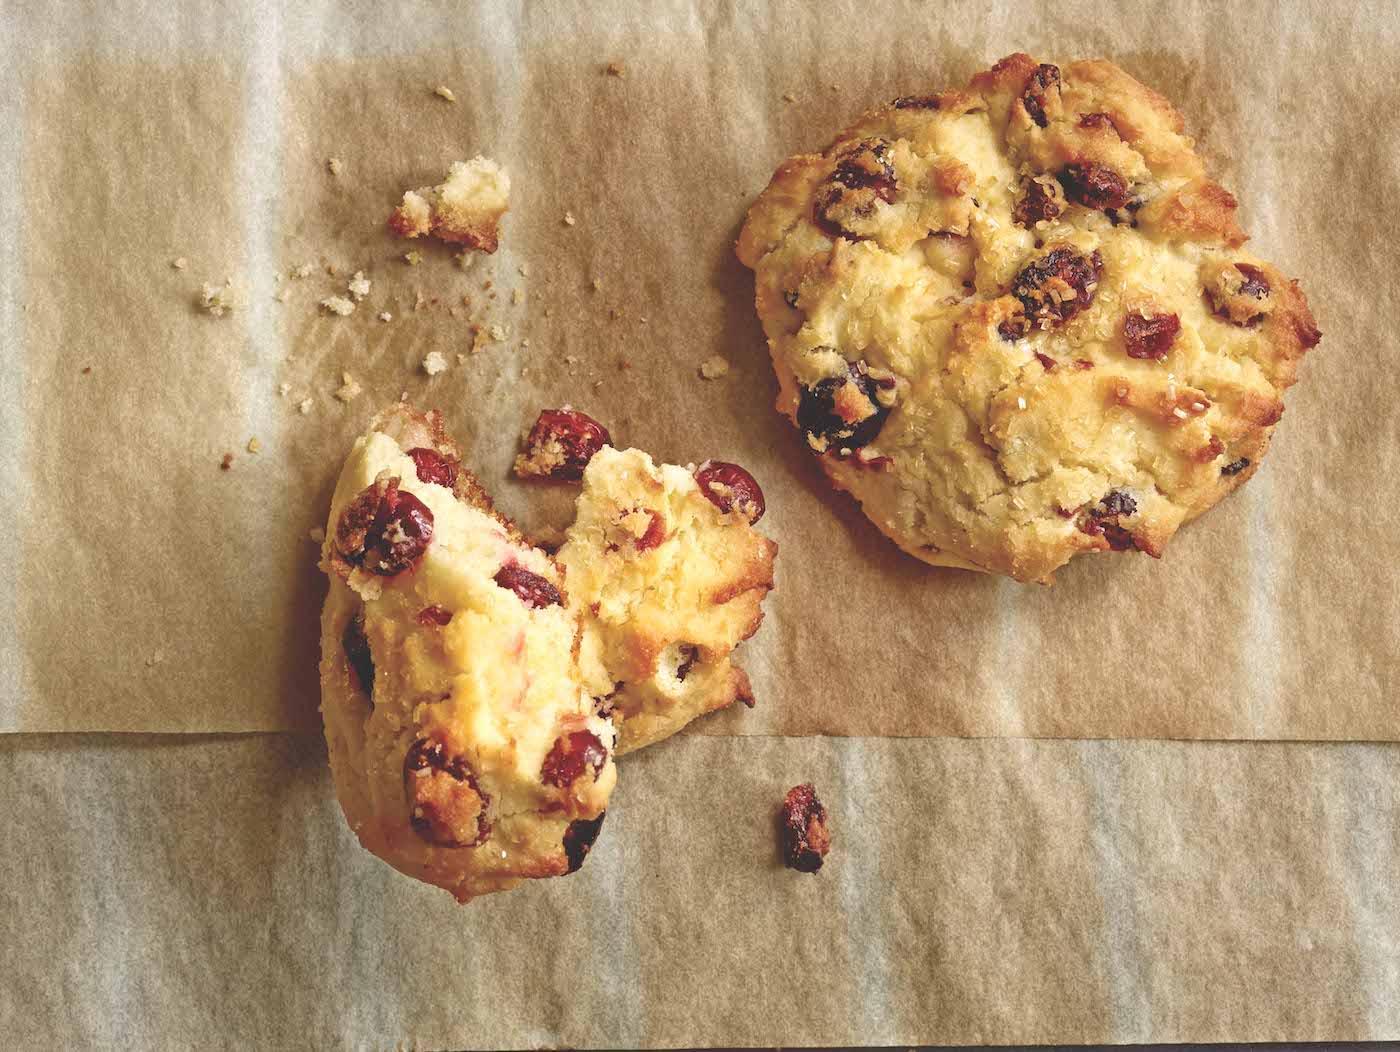 Irish Raisin Cookies R Ed Cipe / Cookie Recipes ...